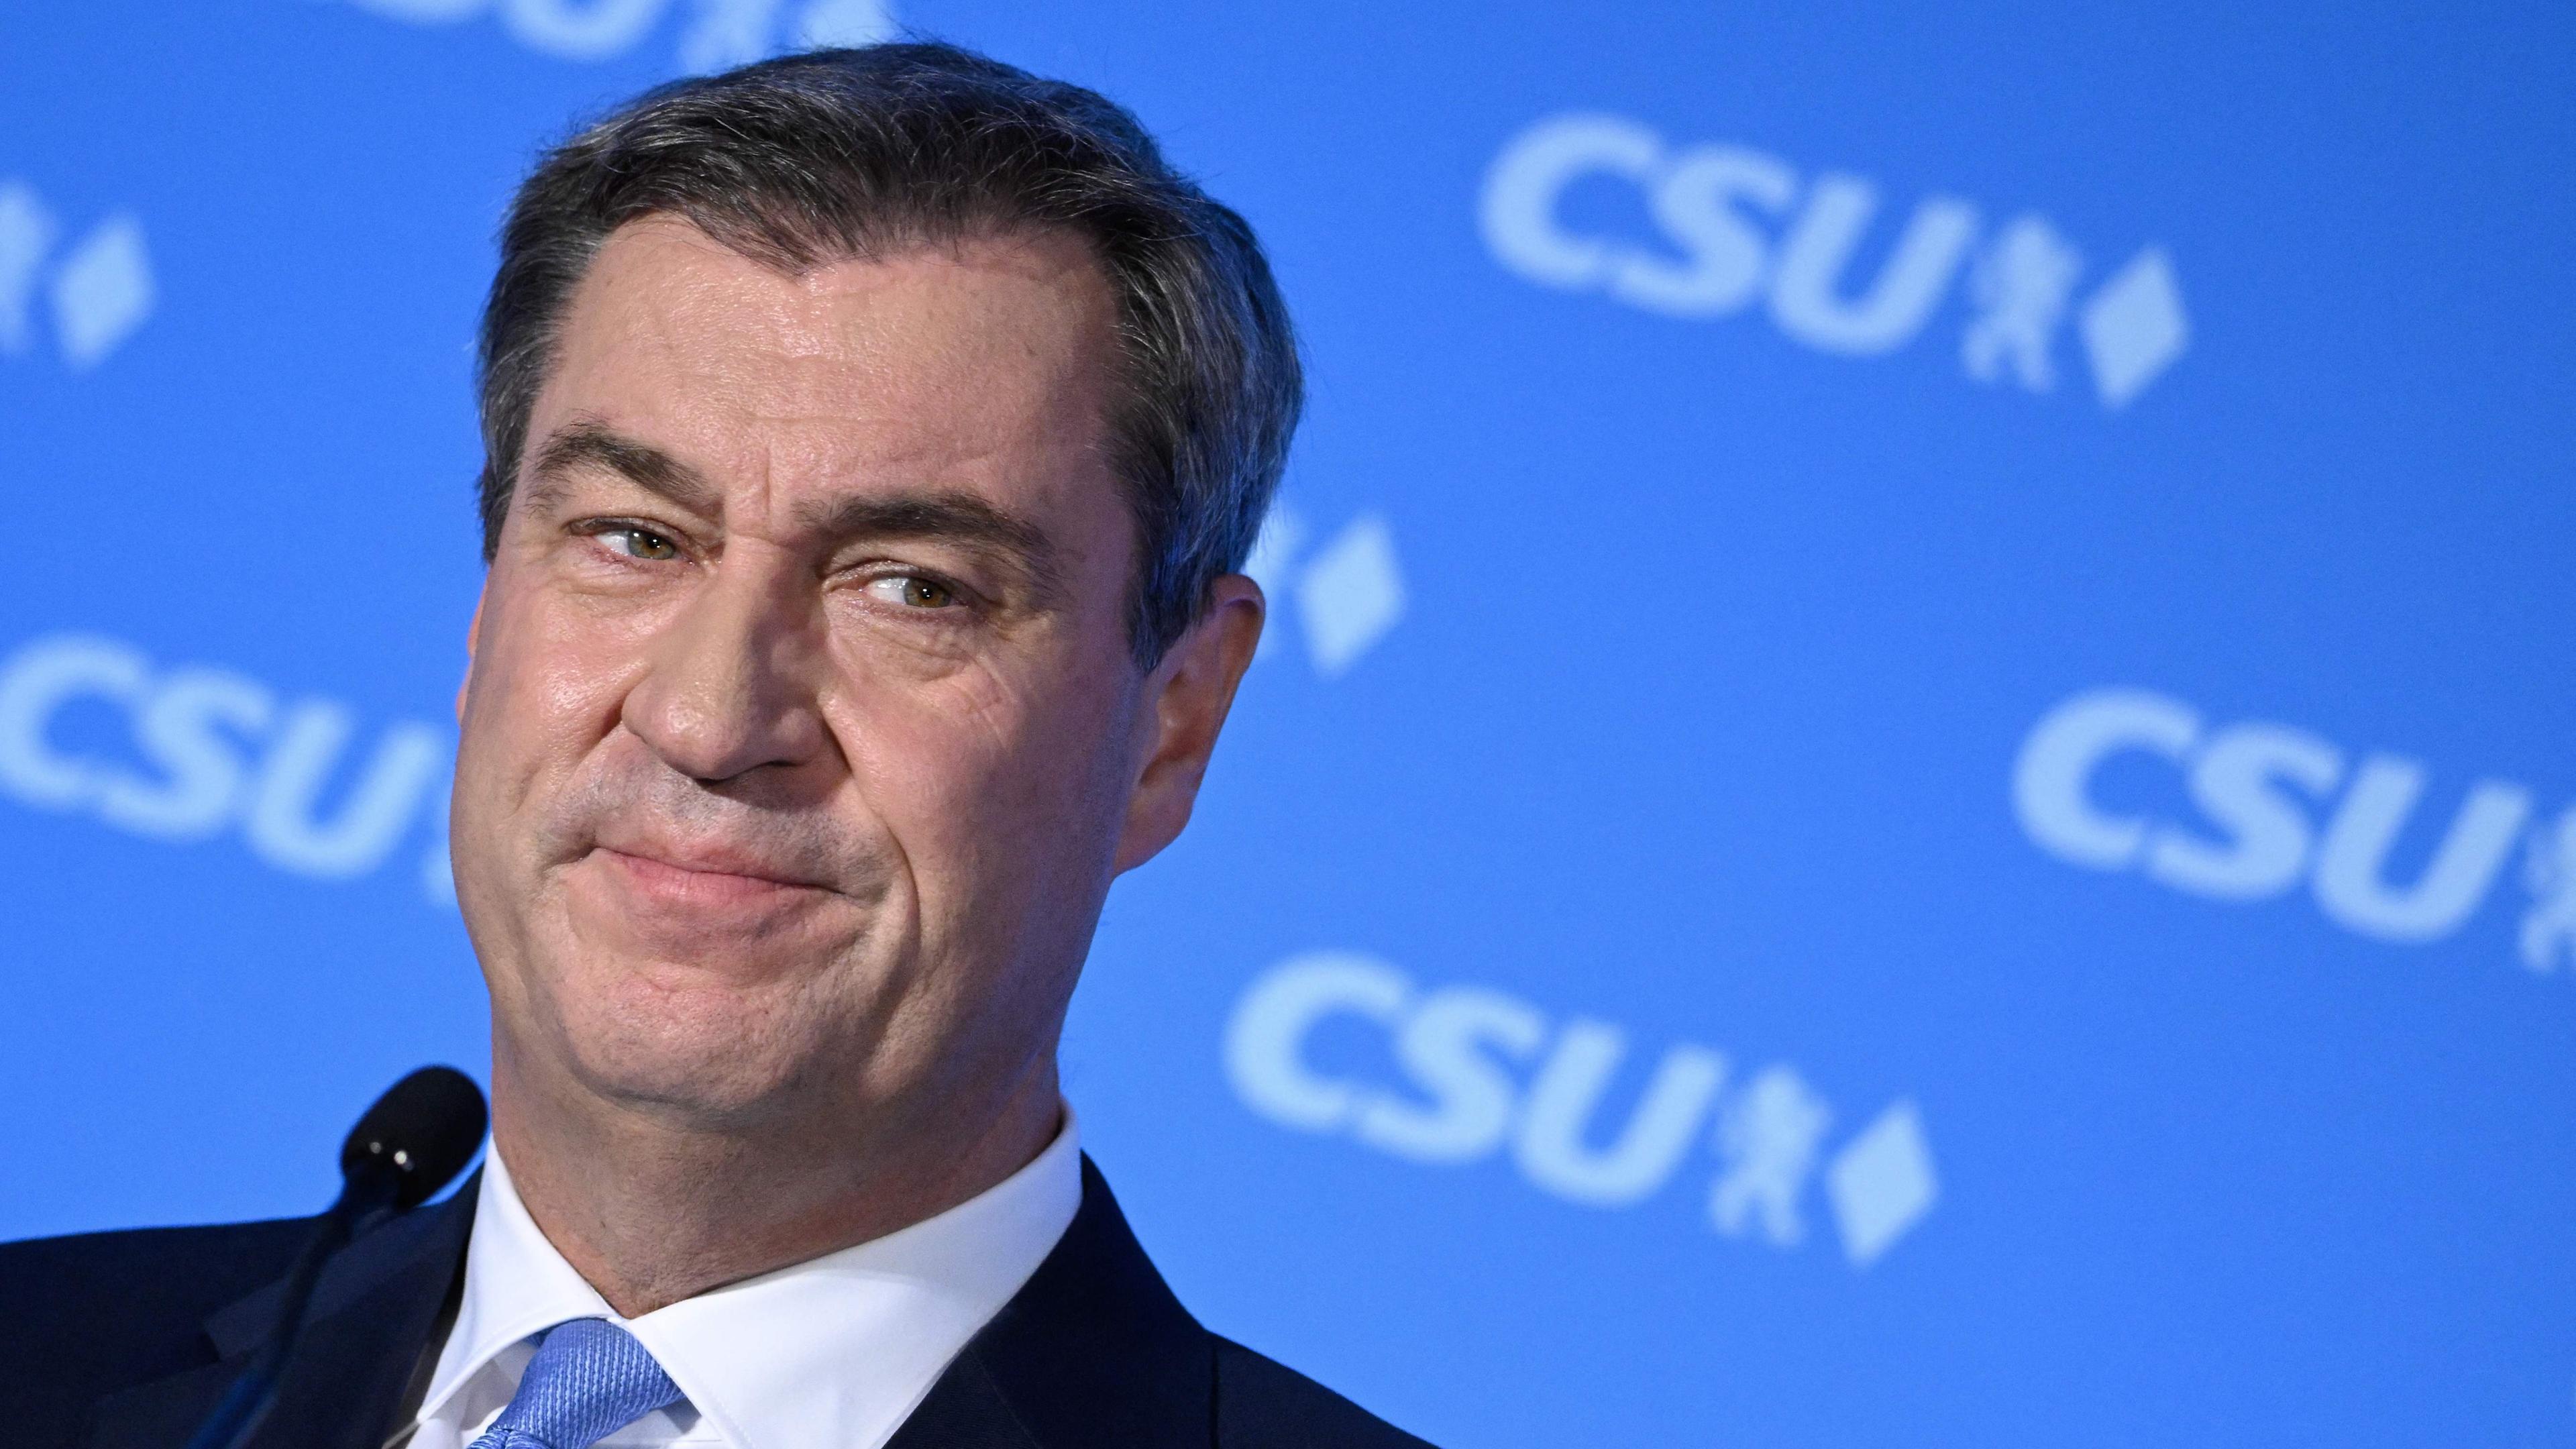 08.10.23, München: Bayerns Ministerpräsident Söder steht vor einem blauen Hintergrund, auf dem in weißer Schrift CSU steht.